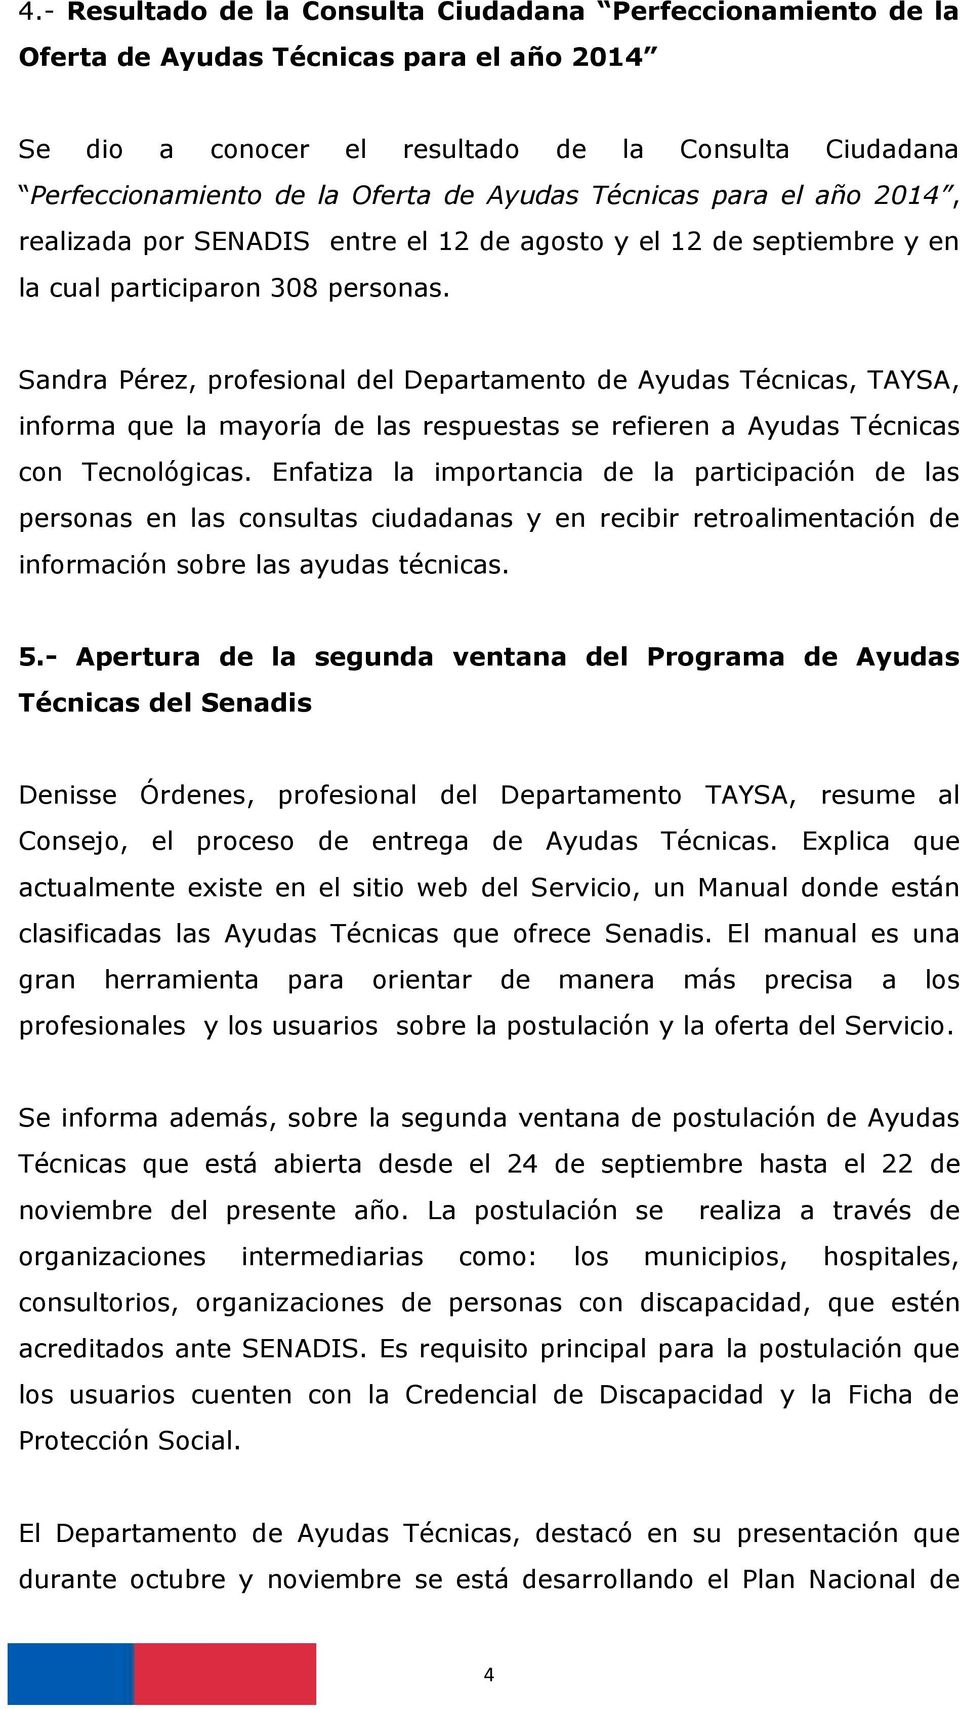 Sandra Pérez, profesional del Departamento de Ayudas Técnicas, TAYSA, informa que la mayoría de las respuestas se refieren a Ayudas Técnicas con Tecnológicas.